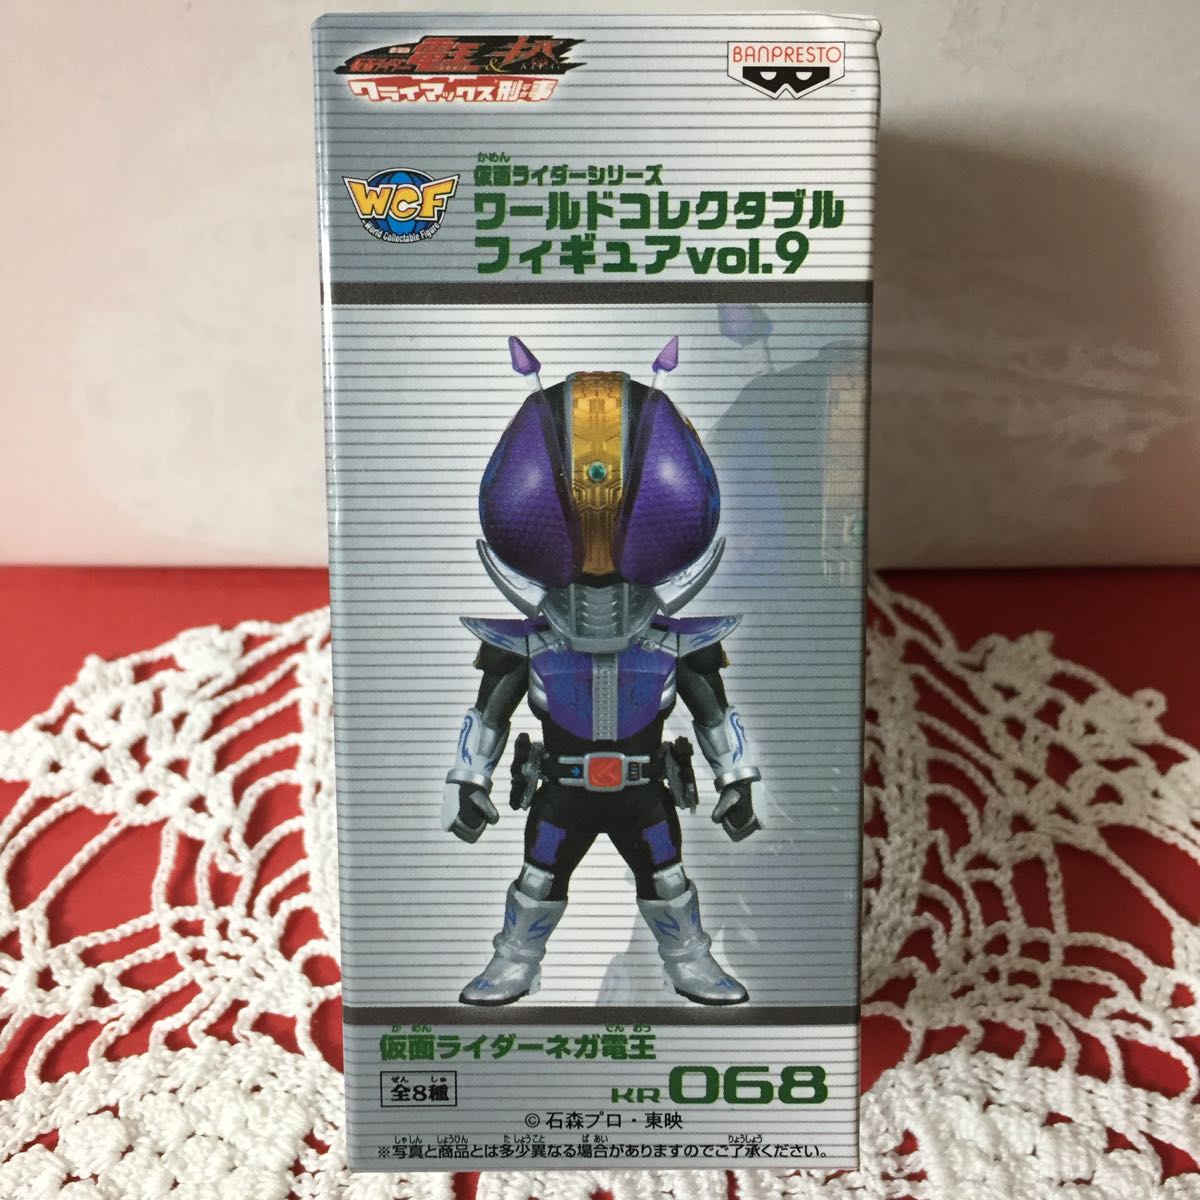  новый товар нераспечатанный внутренний стандартный товар Kamen Rider world коллекционный фигурка wa-korevol.9 Kamen Rider nega электро- . не продается редкость 